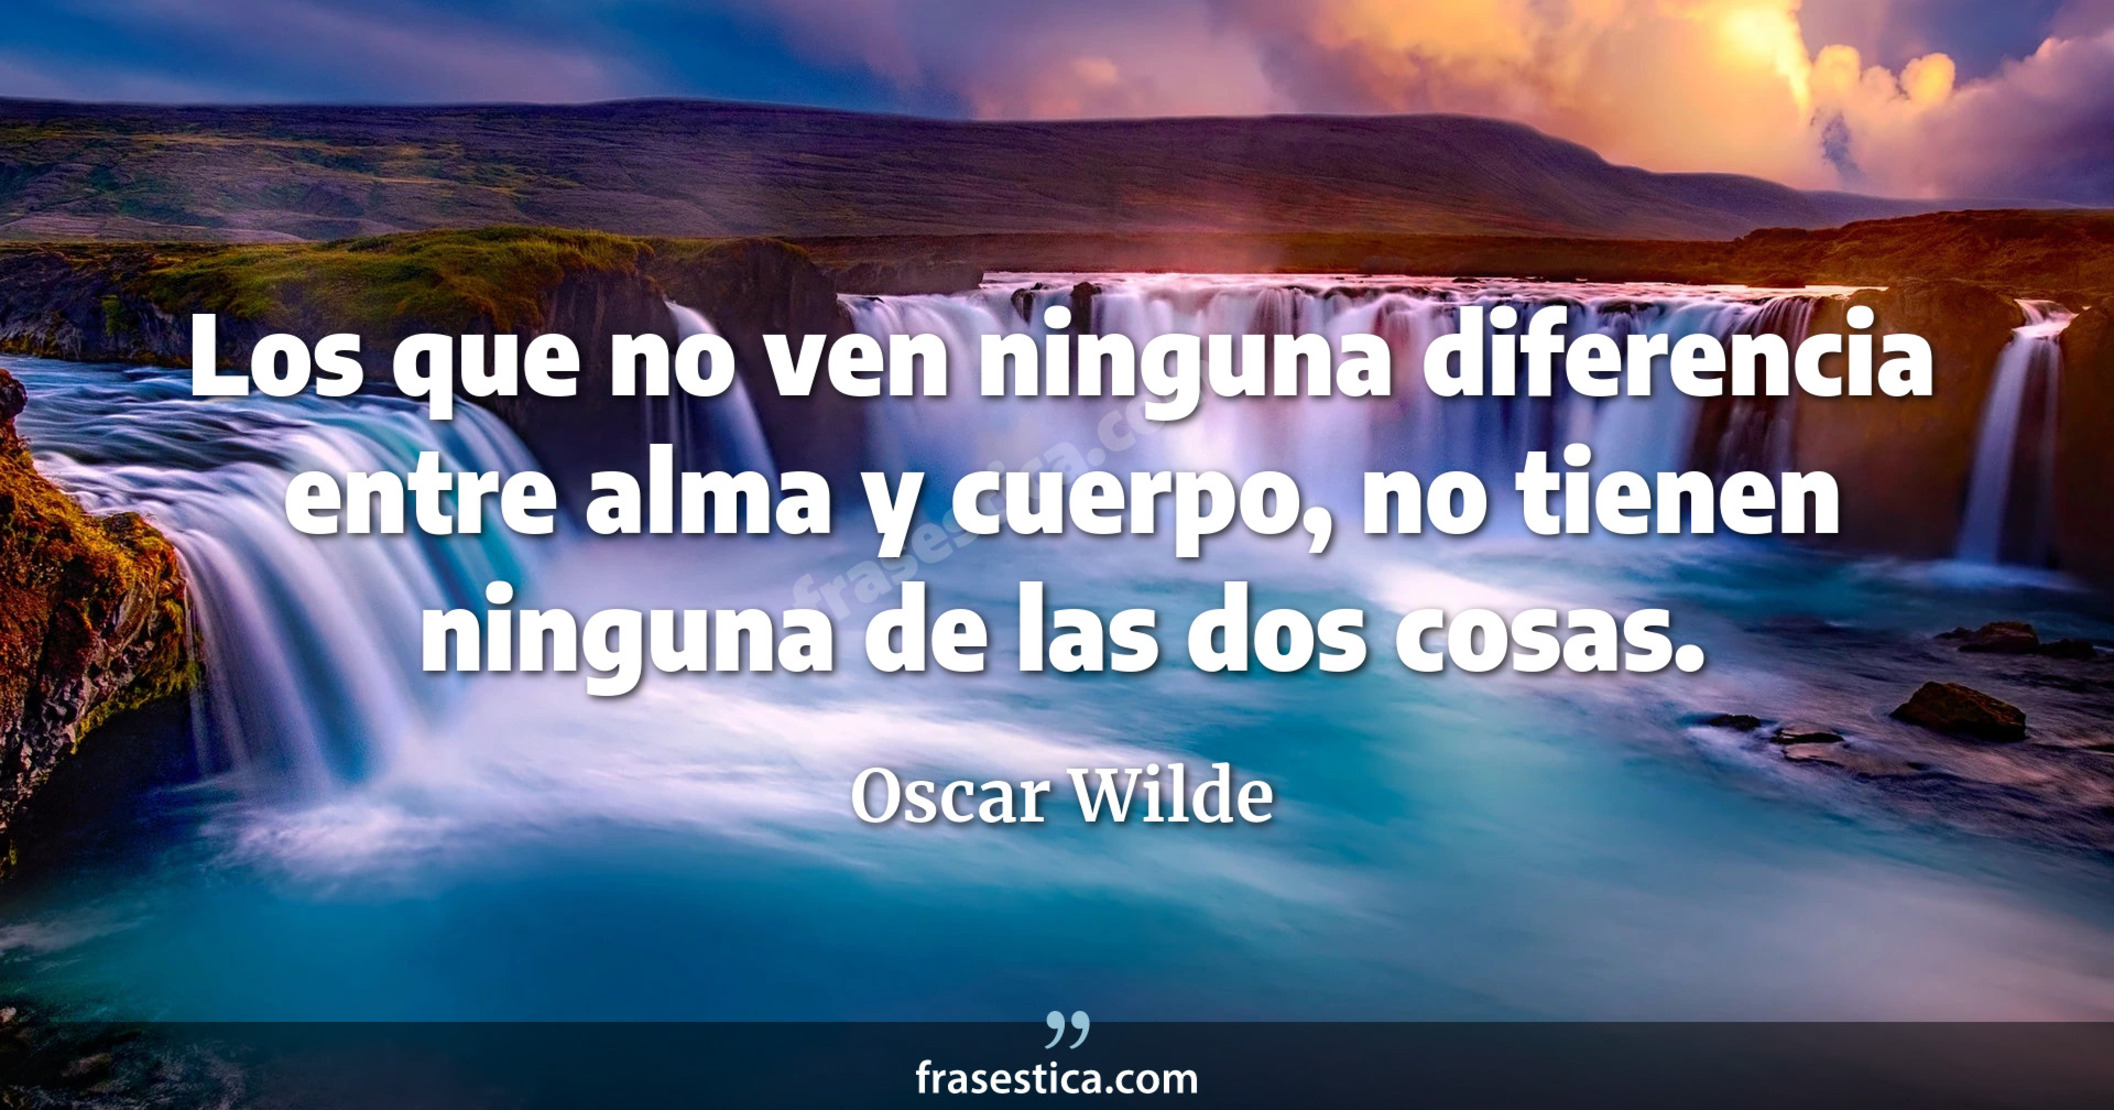 Los que no ven ninguna diferencia entre alma y cuerpo, no tienen ninguna de las dos cosas. - Oscar Wilde